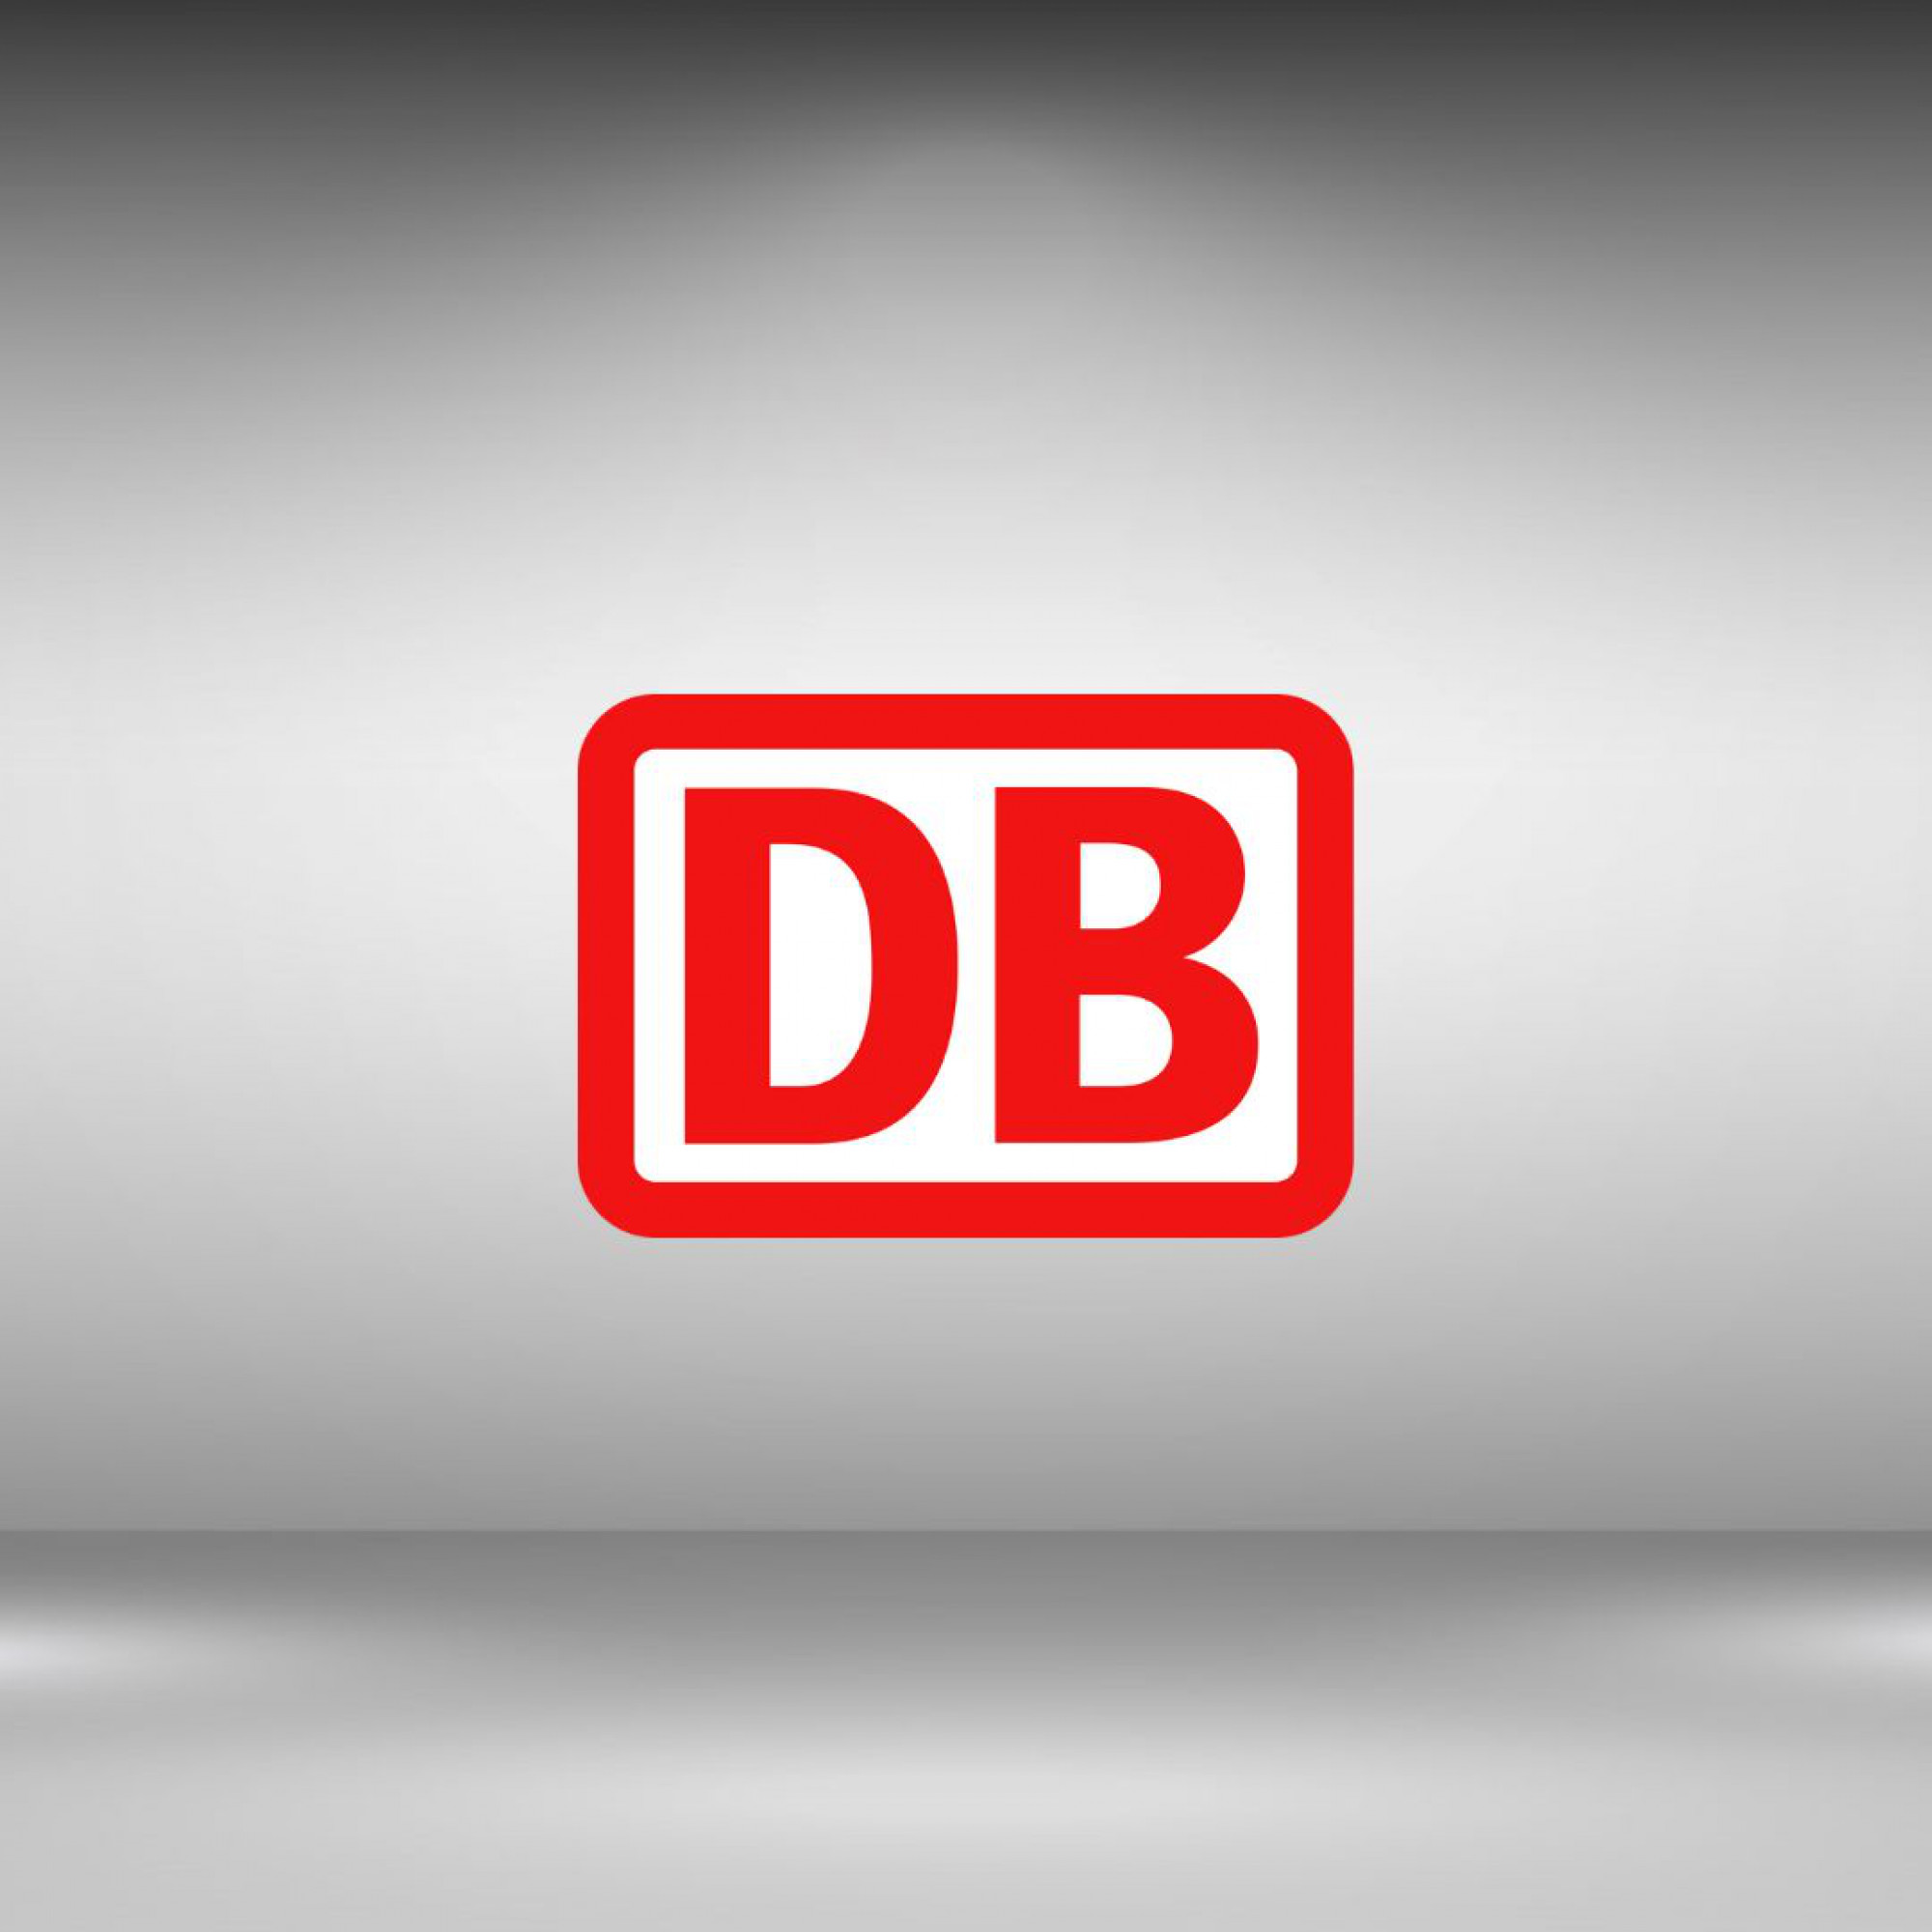 Deutsche Bahn Website v2